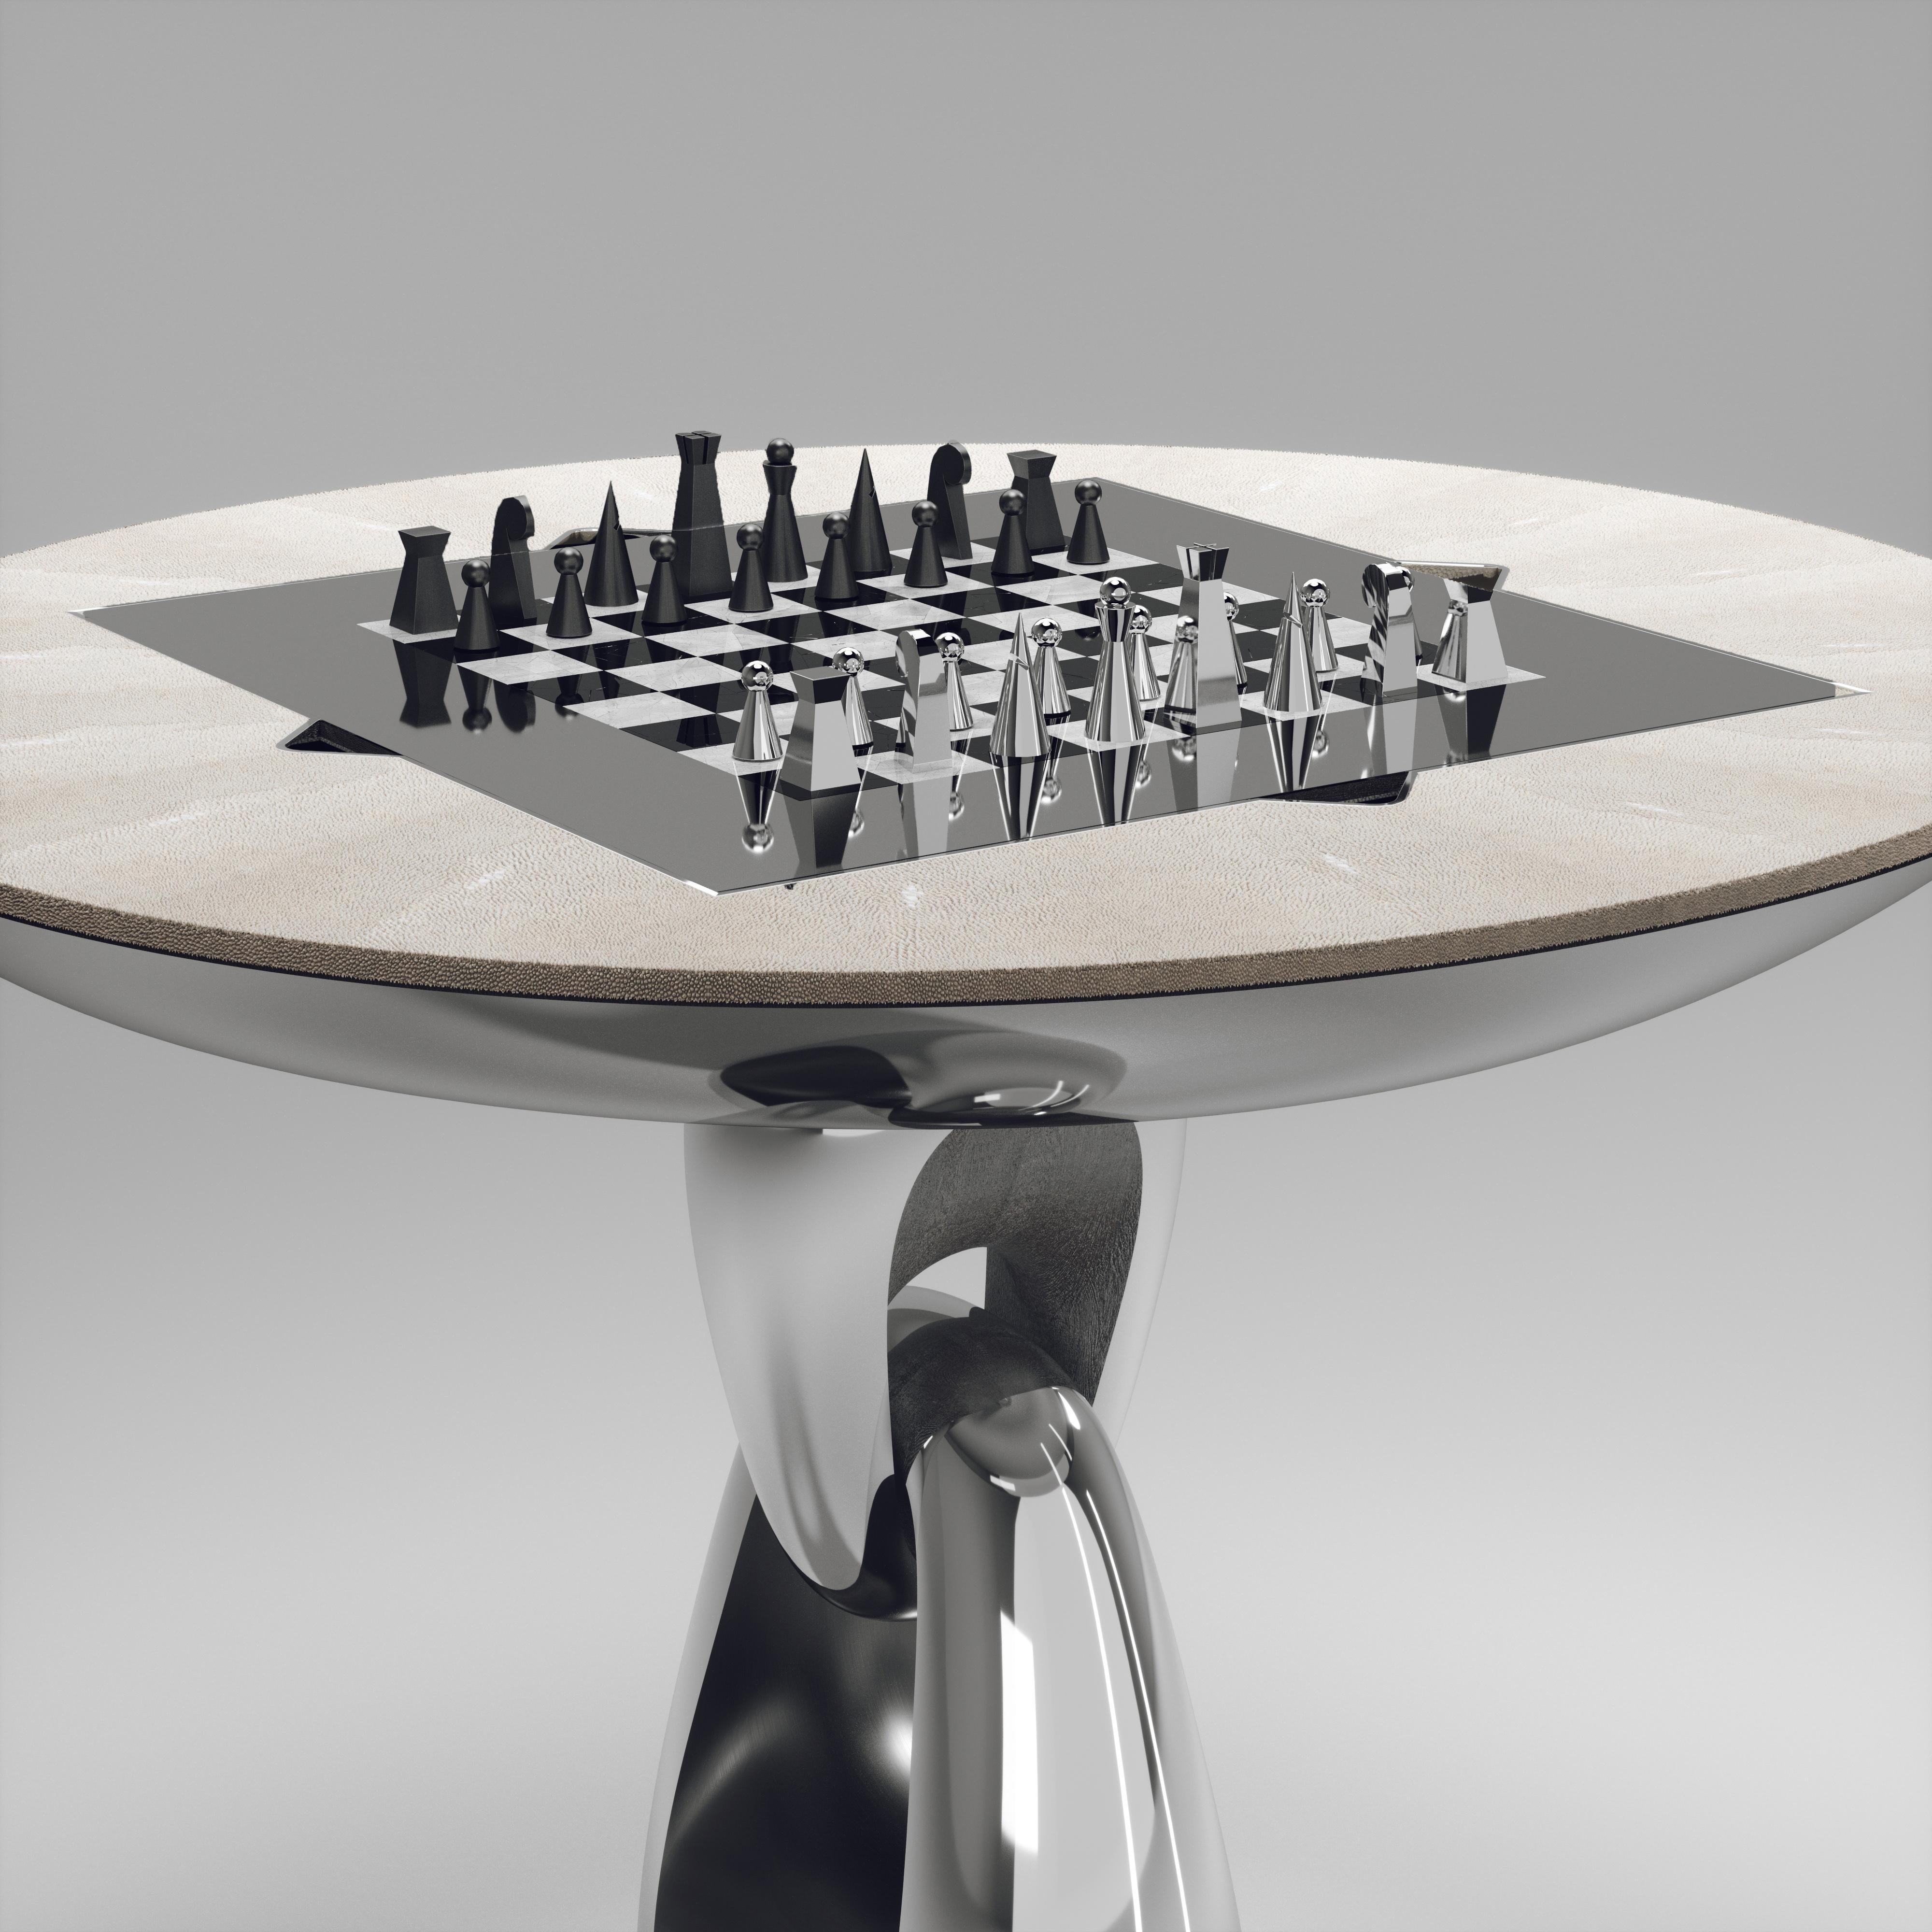 Der 4 in 1 Saturn Spieltisch R&Y Augousti ist ein wahrhaft luxuriöses Schmuckstück für Ihr Zuhause. Die klaren Linien des gesamten Möbelstücks in cremefarbenem Chagrin, akzentuiert durch den skulpturalen und eleganten Sockel aus poliertem Edelstahl